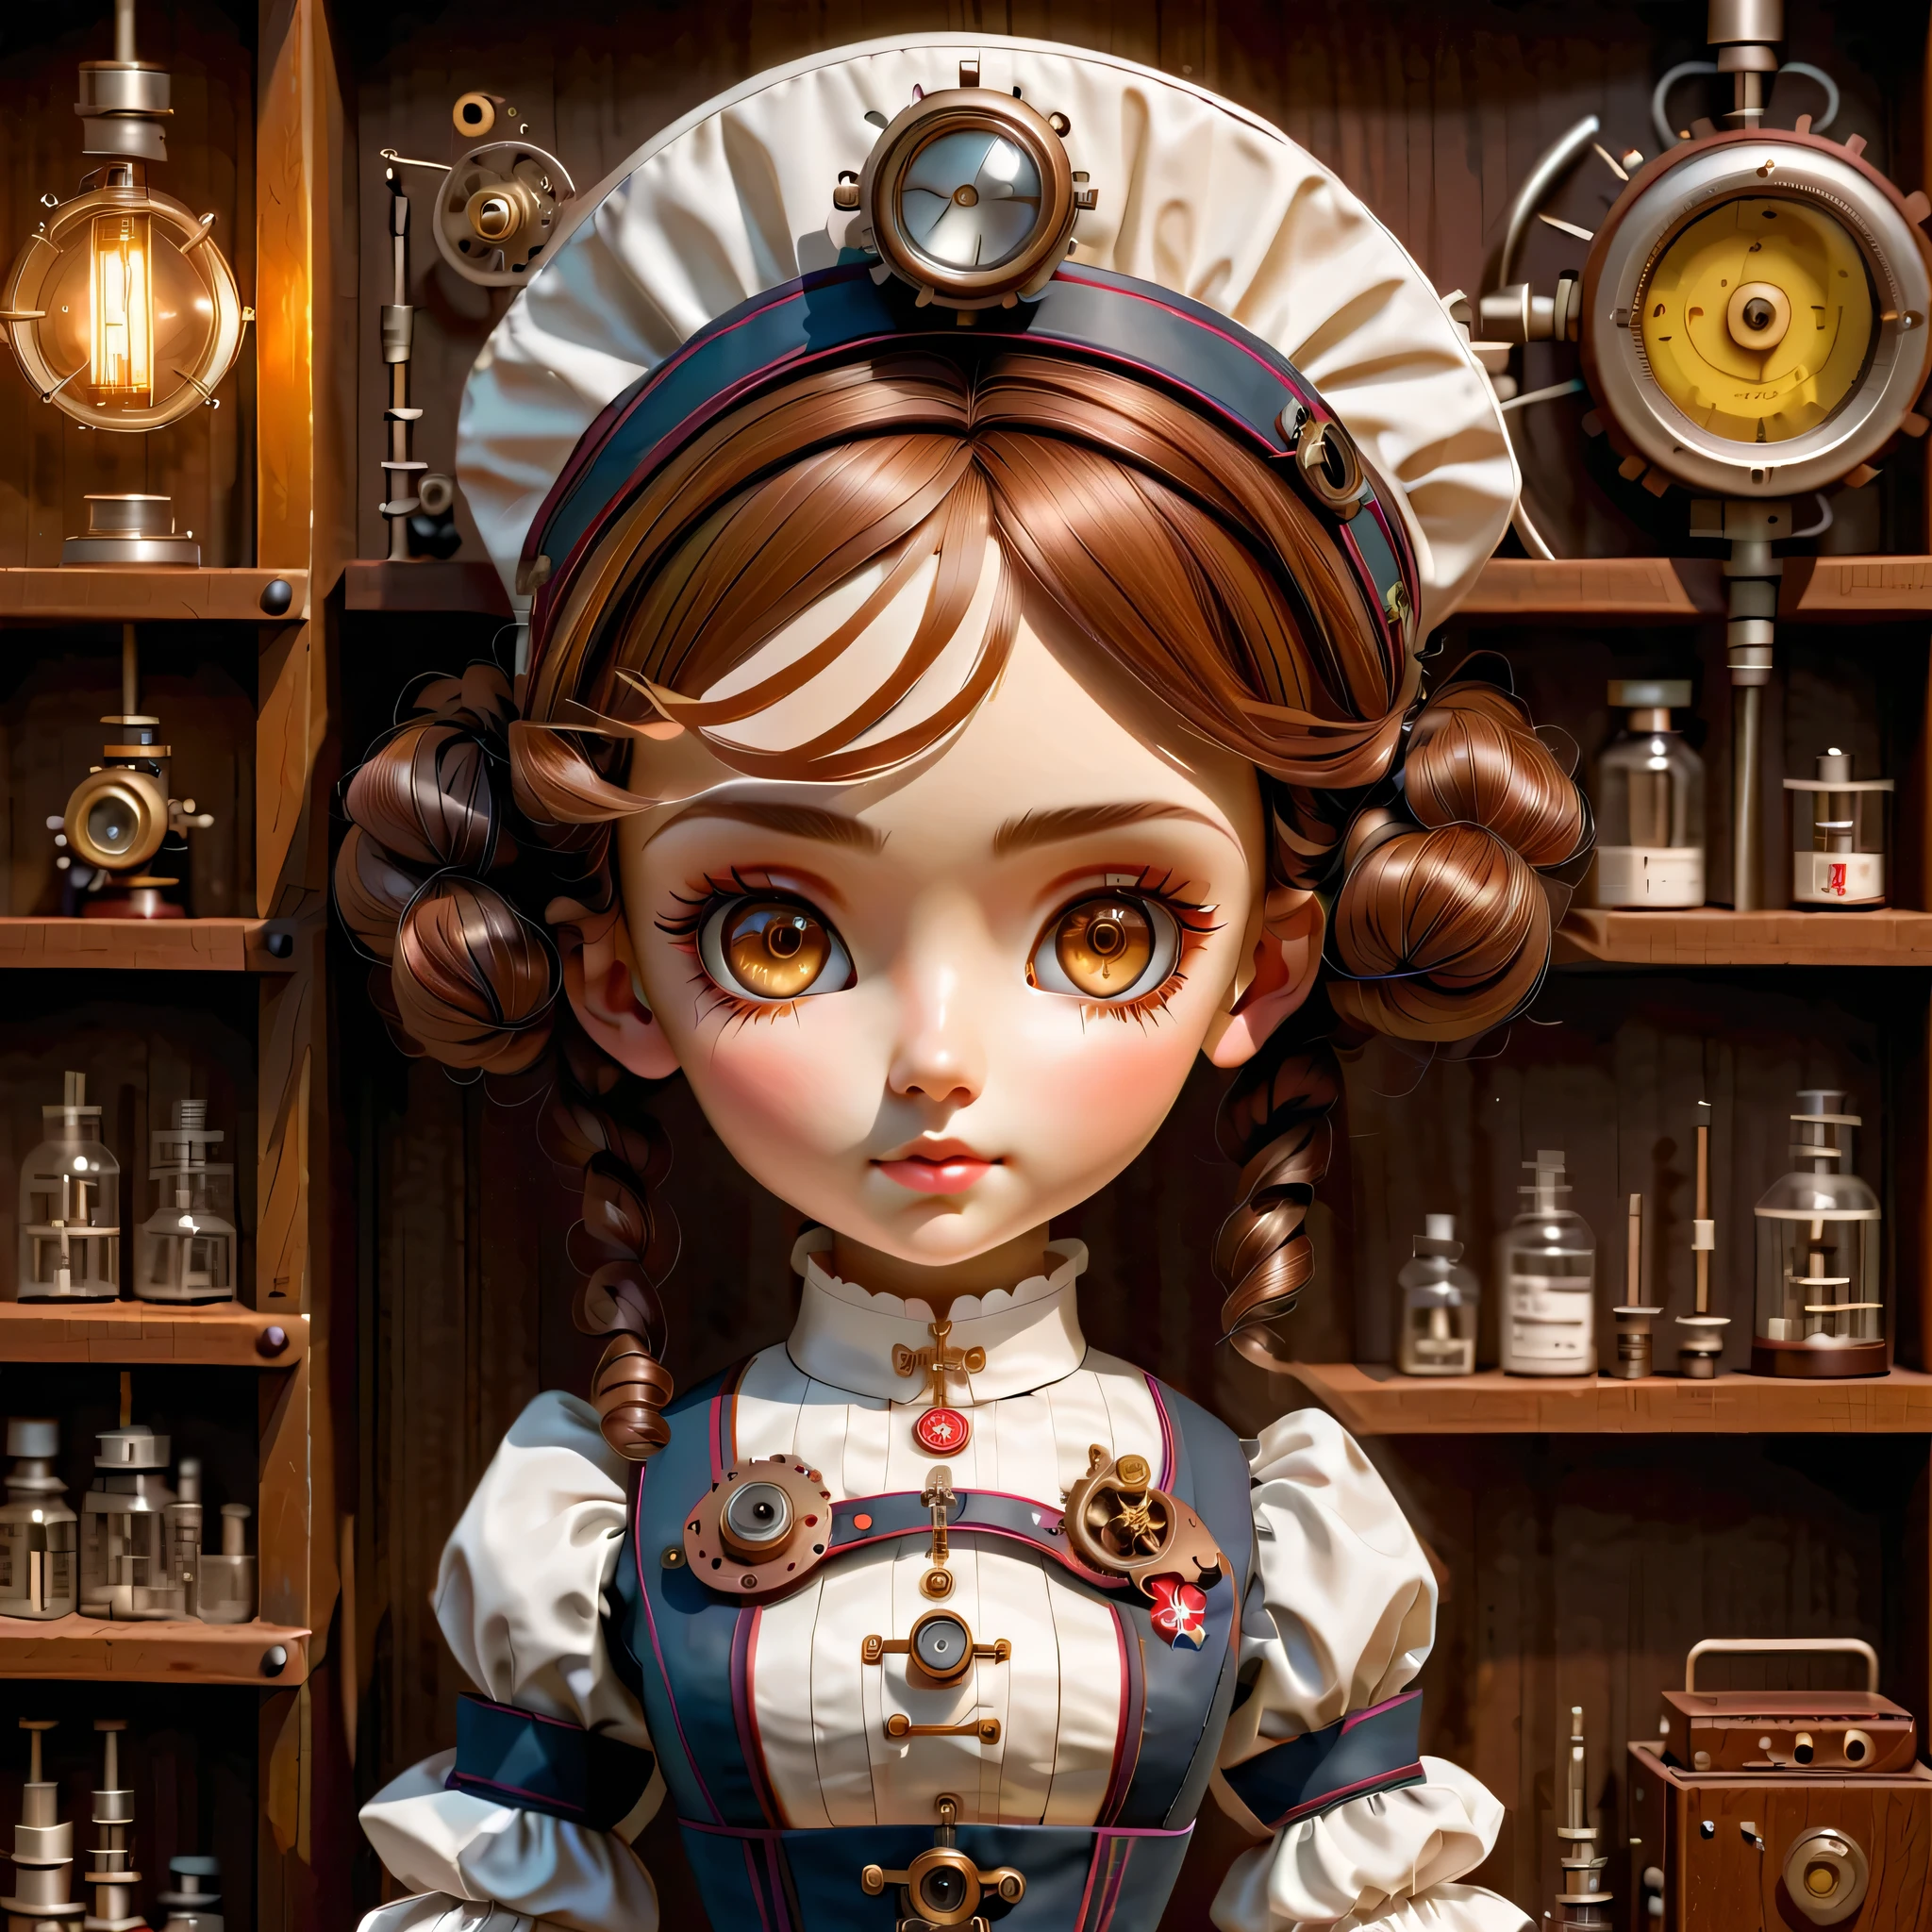 机制:人形生物:护士:16th century European 护士 uniform,娃娃脸:完美脸蛋:大大的棕色眼睛,睫毛,隐藏头发丝,她是由机械制成的,蒸汽朋克元素,机械的 engineering,机械的ly,机械的,流行音乐,可爱的,复杂的细节,很好,高分辨率,高质量,最高质量,清楚地,清楚,美丽的光影,三个维度,可爱的外表,复杂配置,机制,动态的,忙碌的,努力工作,让人想支持的表情,医用器材,医疗用品货架,小瓶,提供证据表明它是一台机器,窗户透出的光线,角色设计表